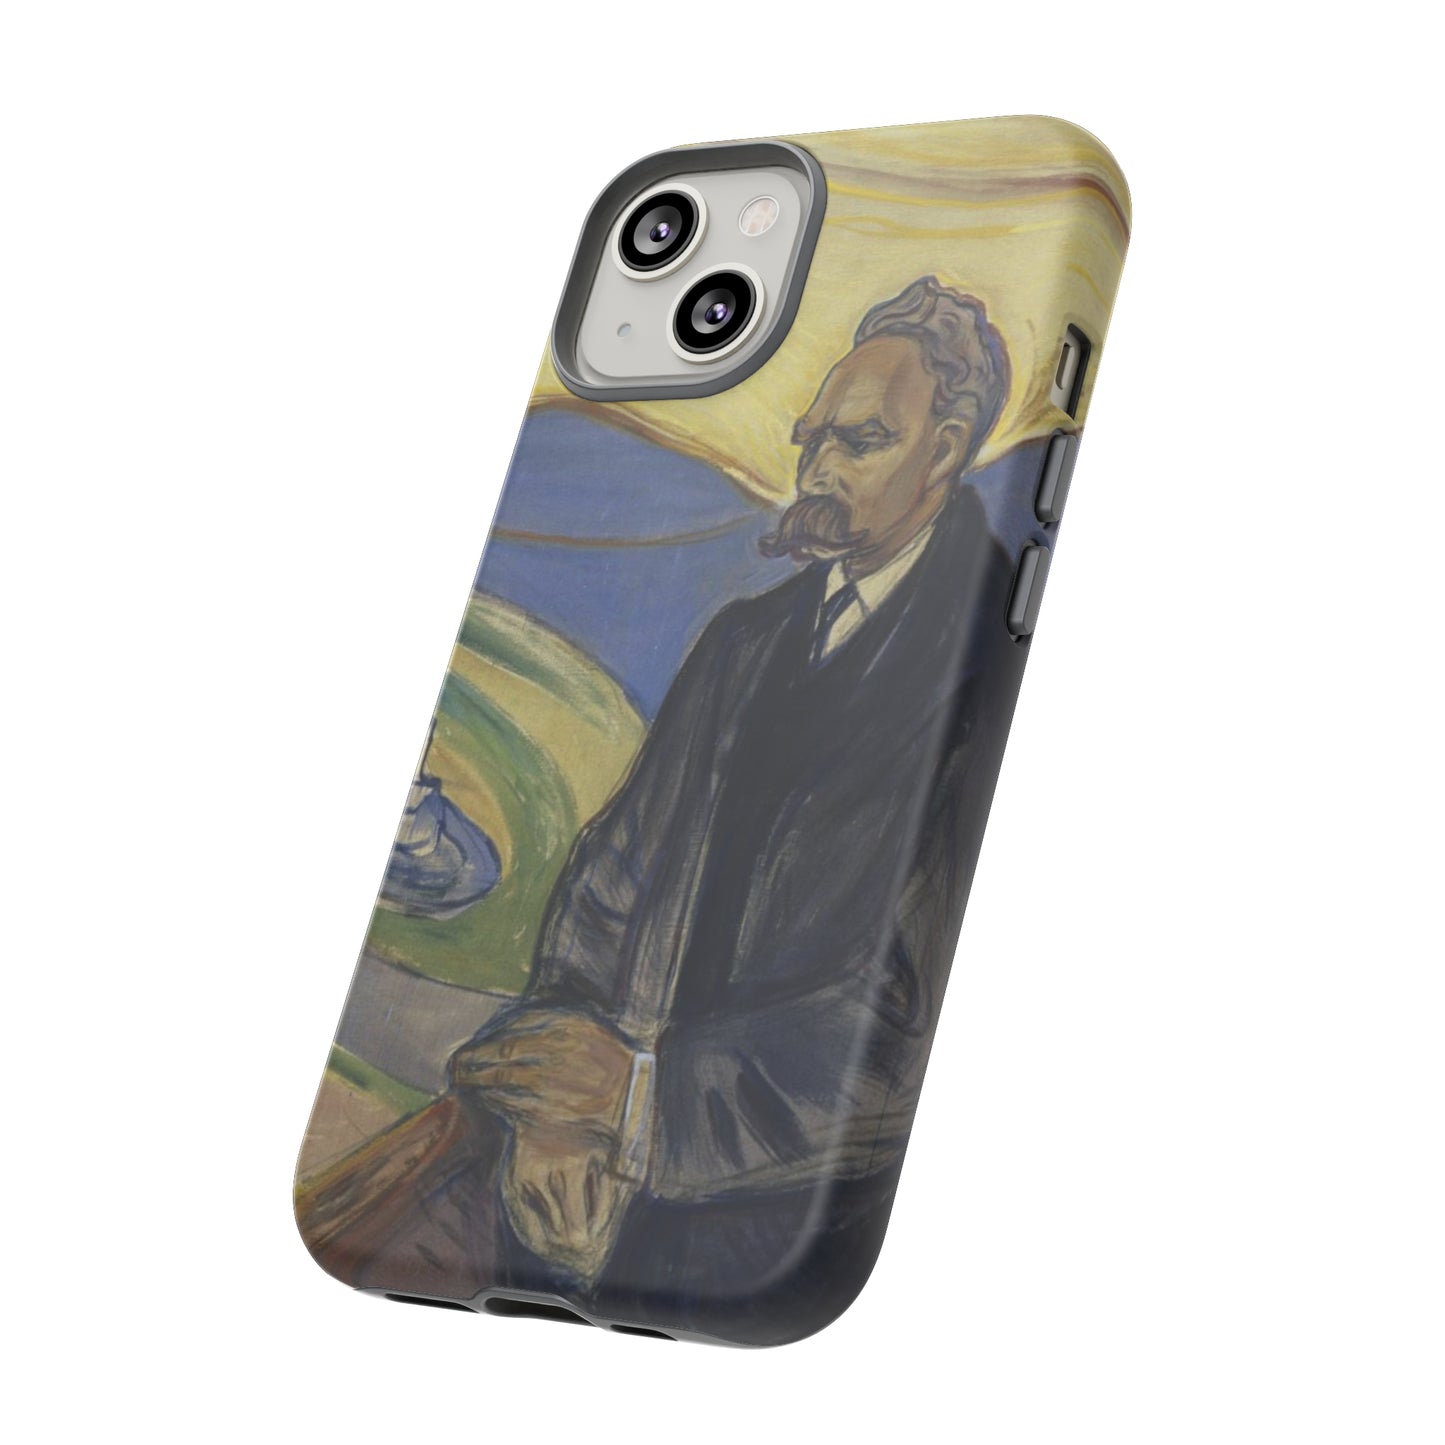 Friederich Nietzsche by Edvard Munch - Cell Phone Case